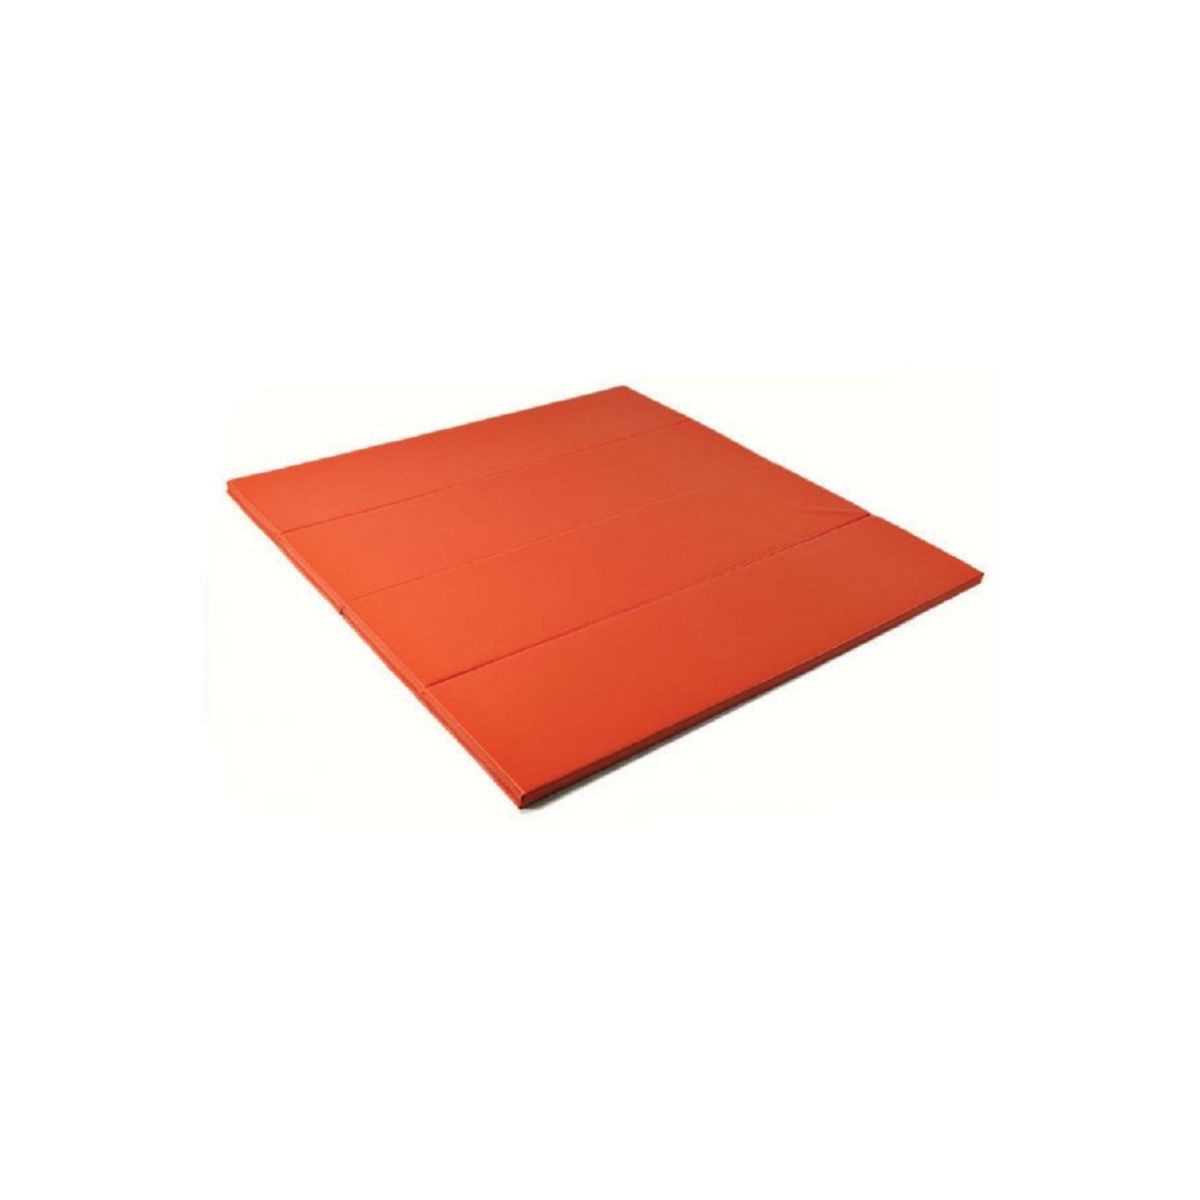 Surface d'évolution repliable couleur orange abricot - 1